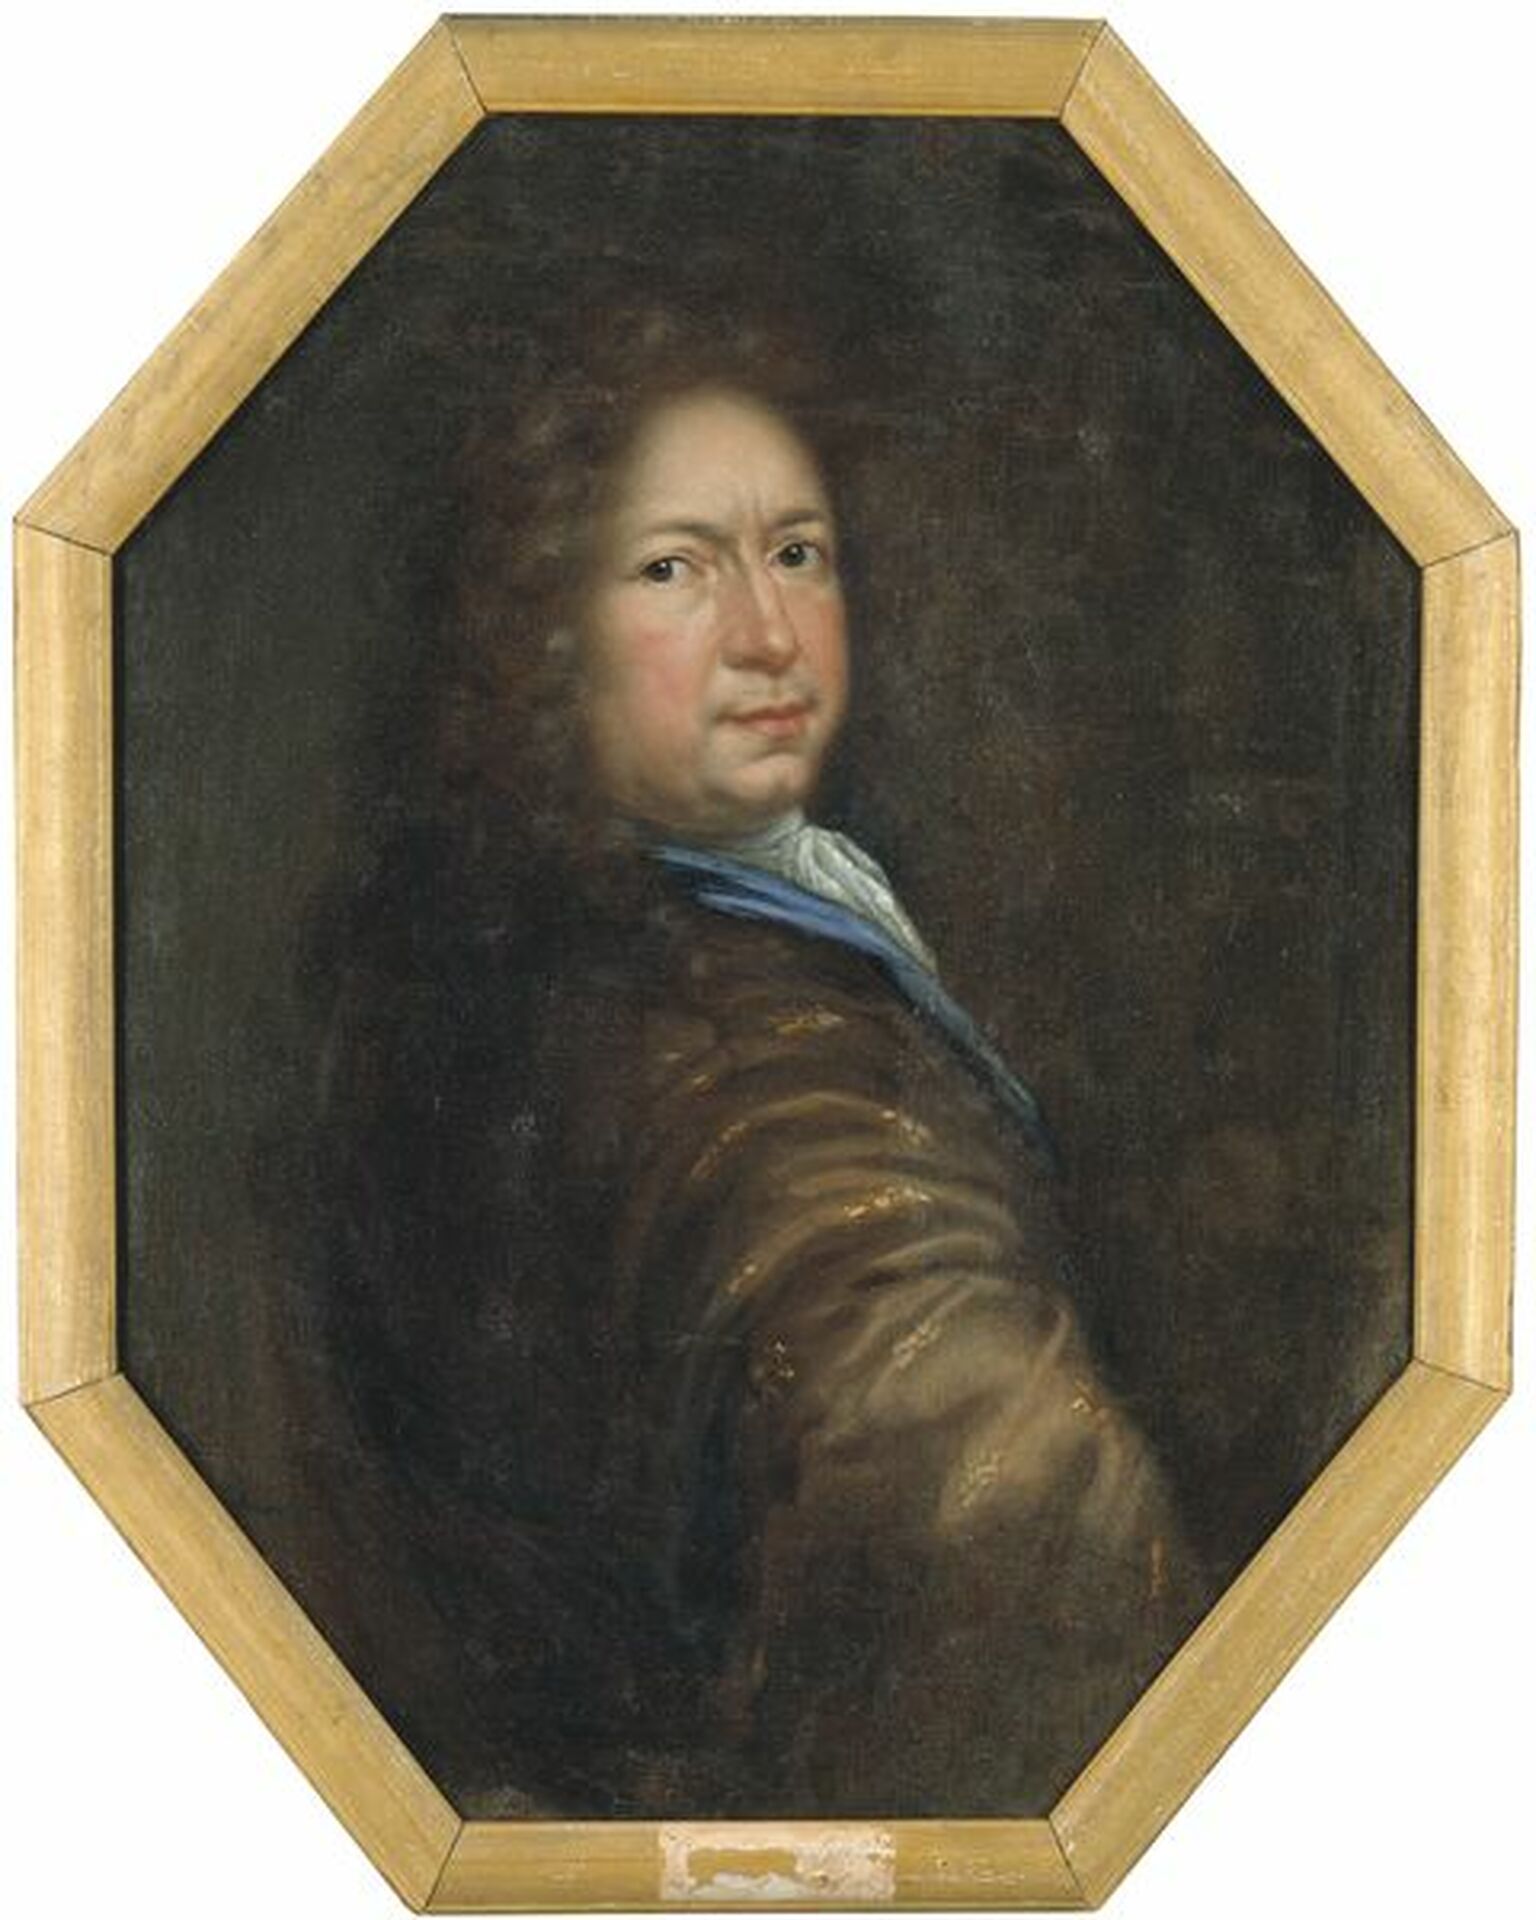 Självporträtt, David Klöcker Ehrenstrahl (1629-1698), konstnär, född i Tyskland, verksam i Sverige Konstnär David Klöcker Ehrenstrahl